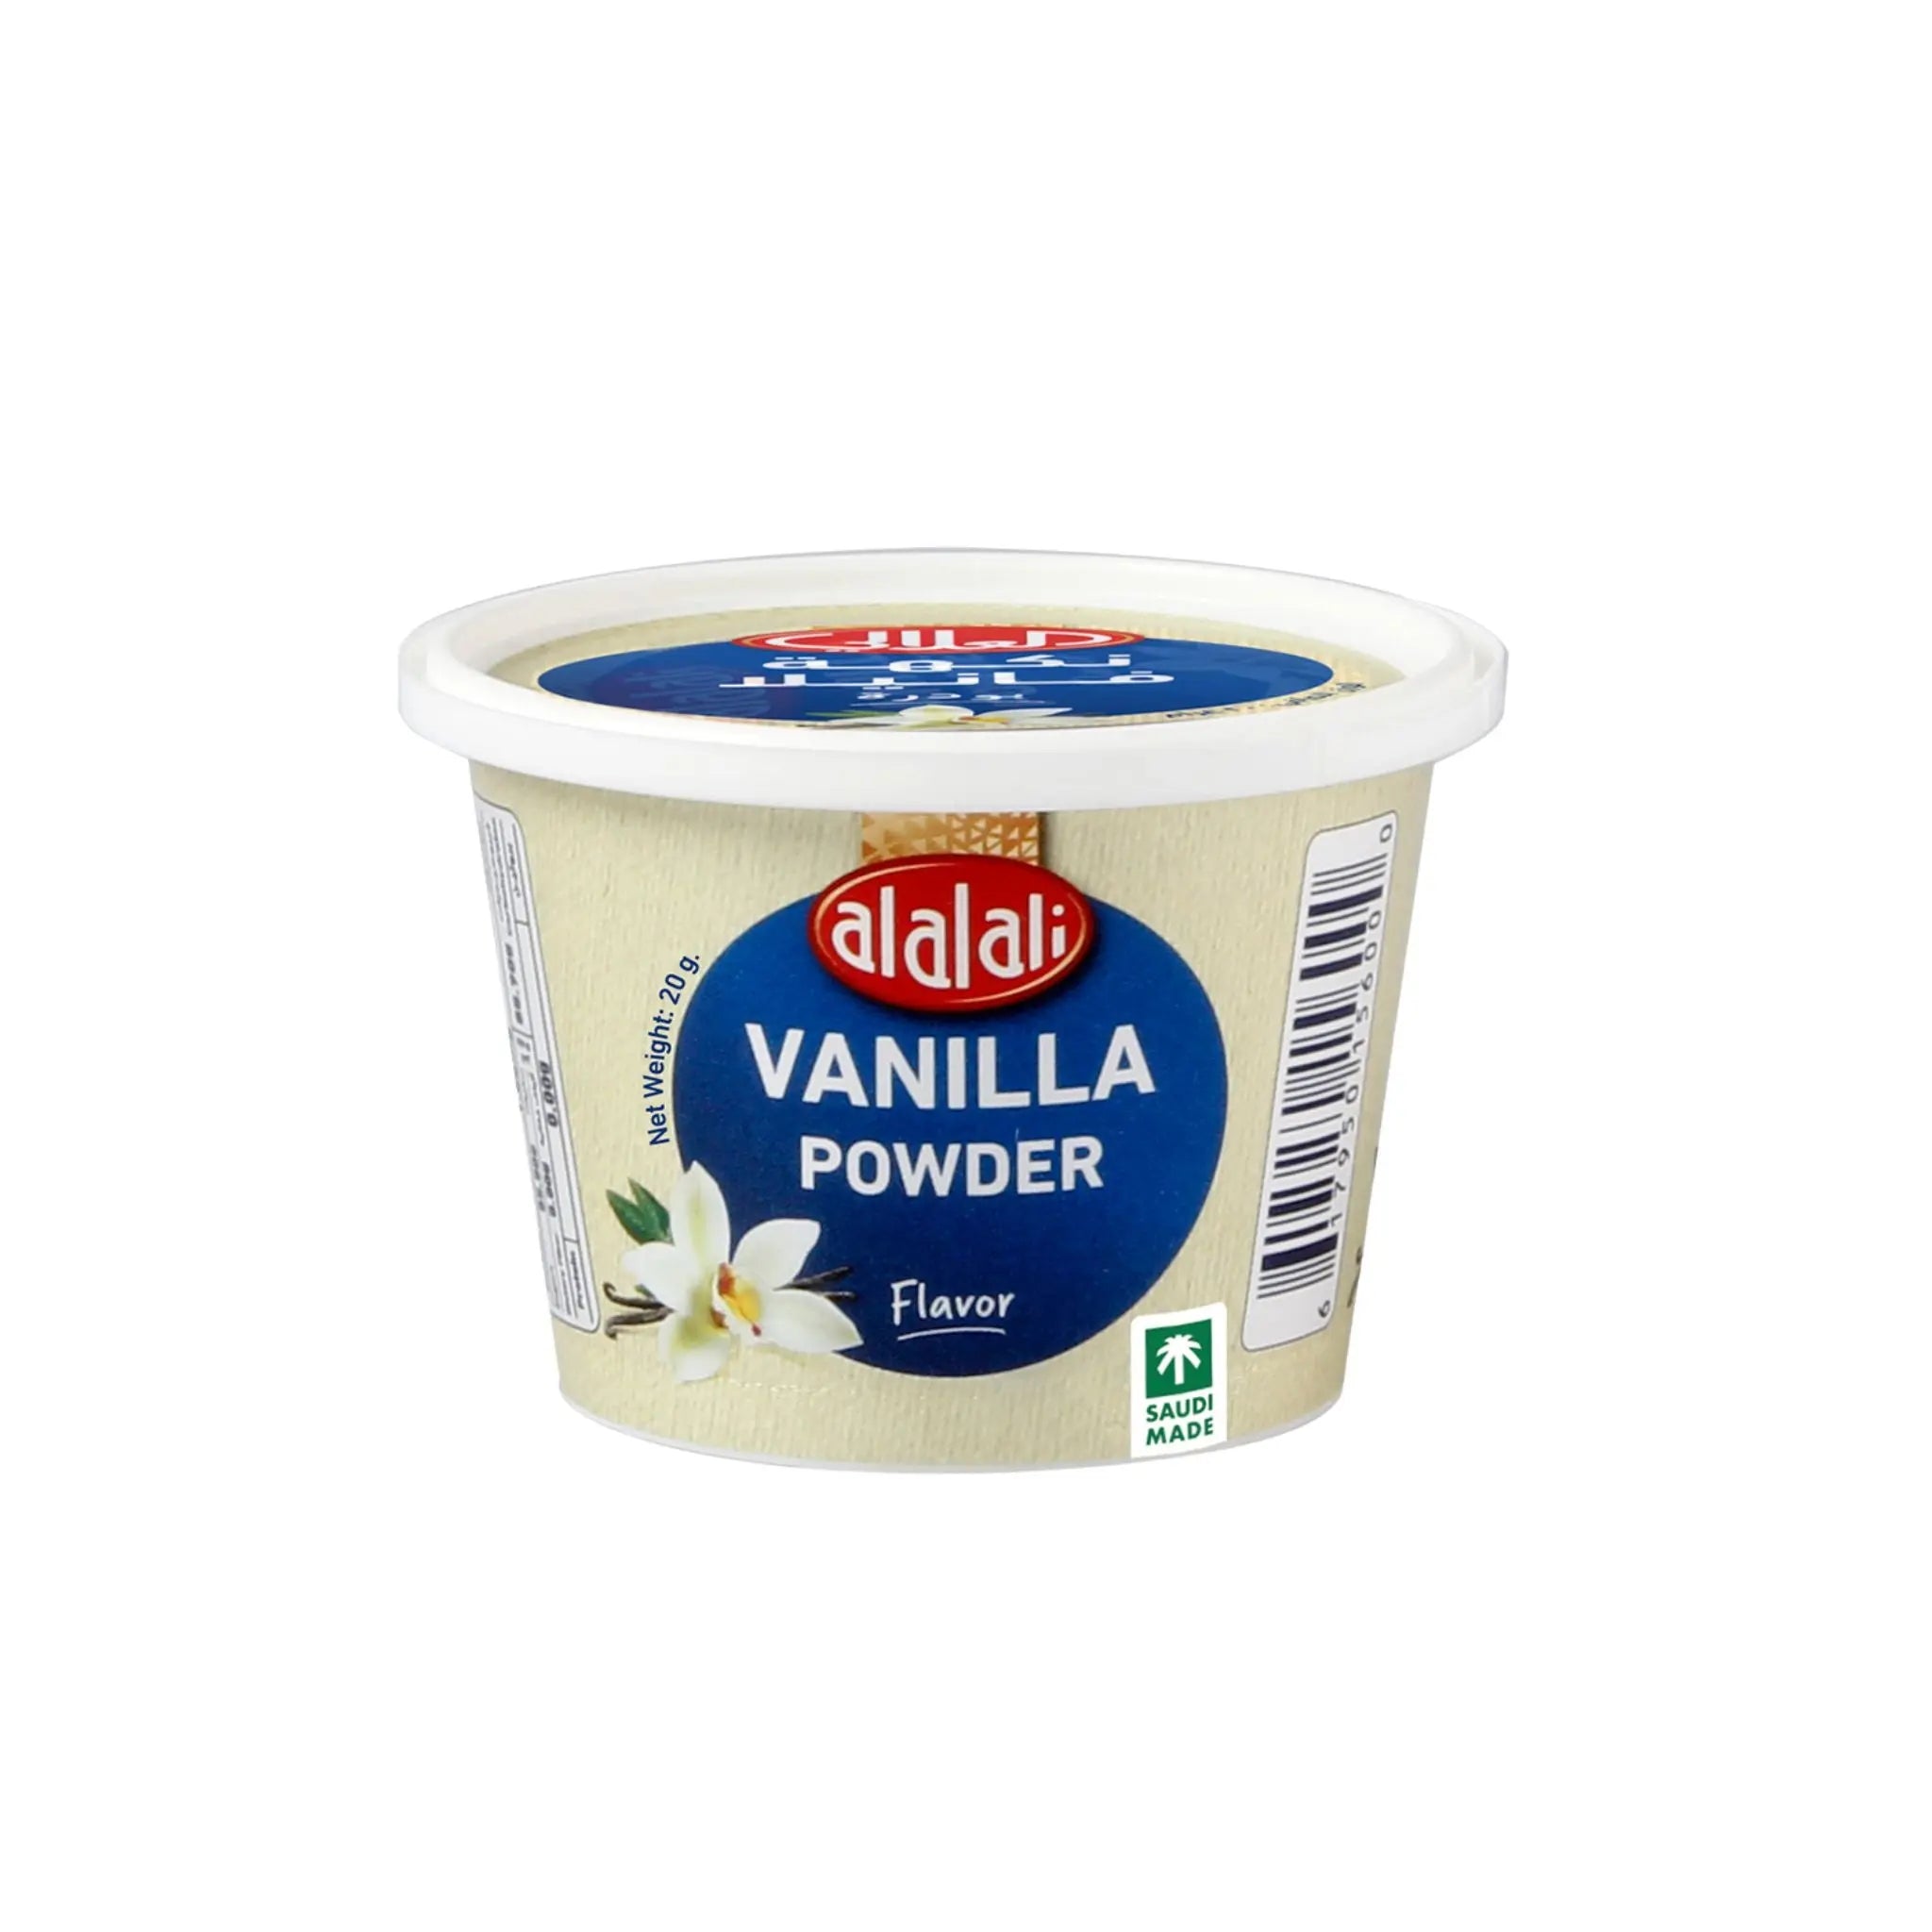 Al Alali Vanilla Powder - 10x12x20g (1 Carton) - Marino.AE